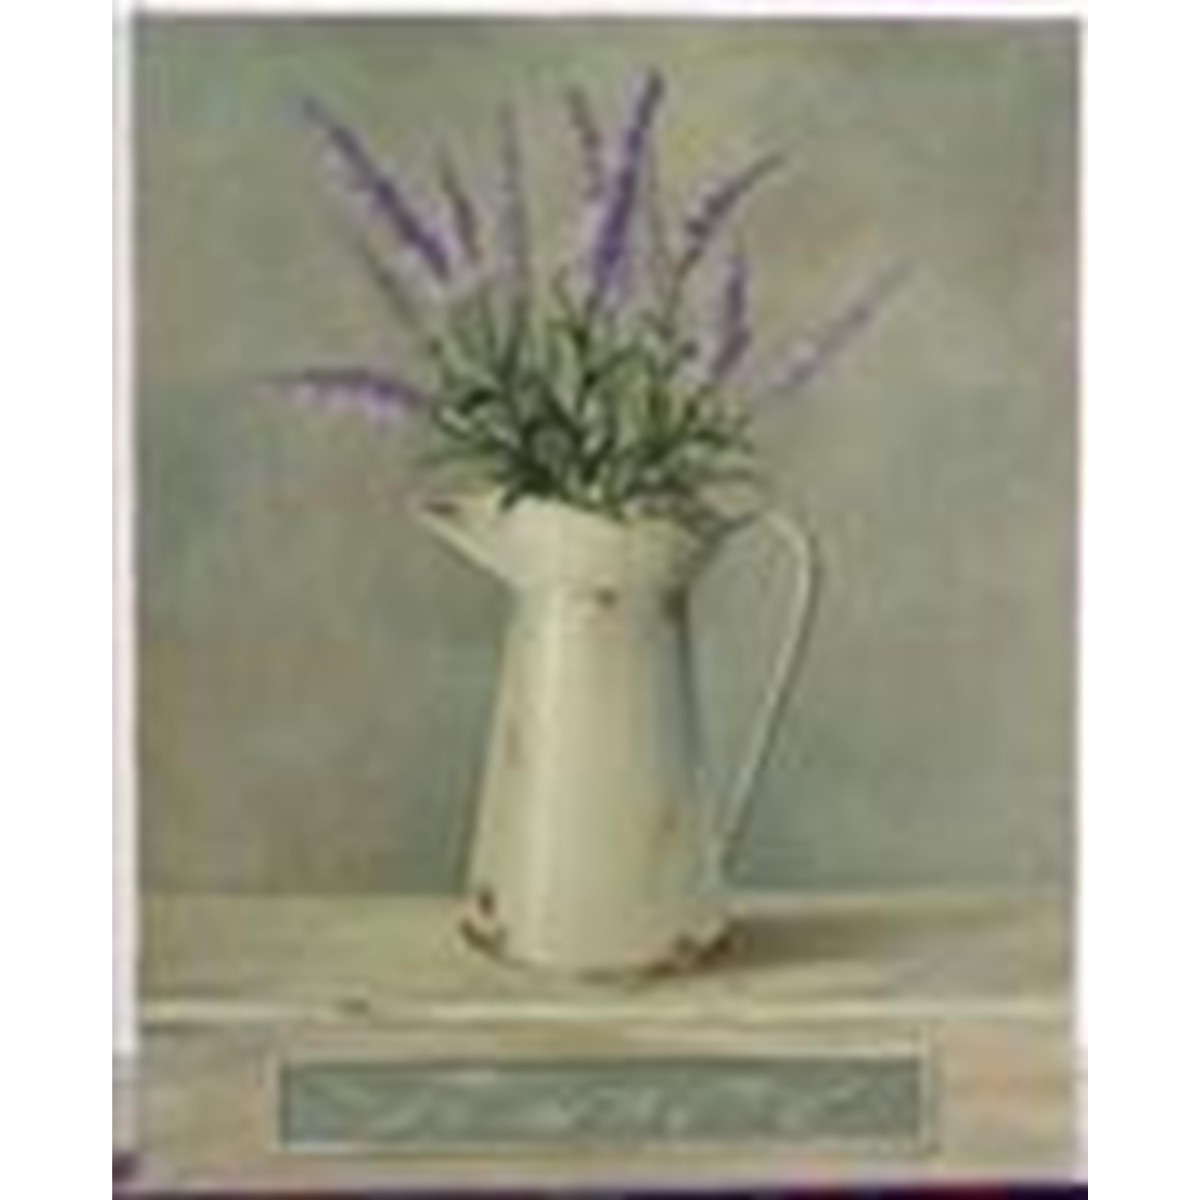   Tableau Lavender in jug  17.8x12.7cm